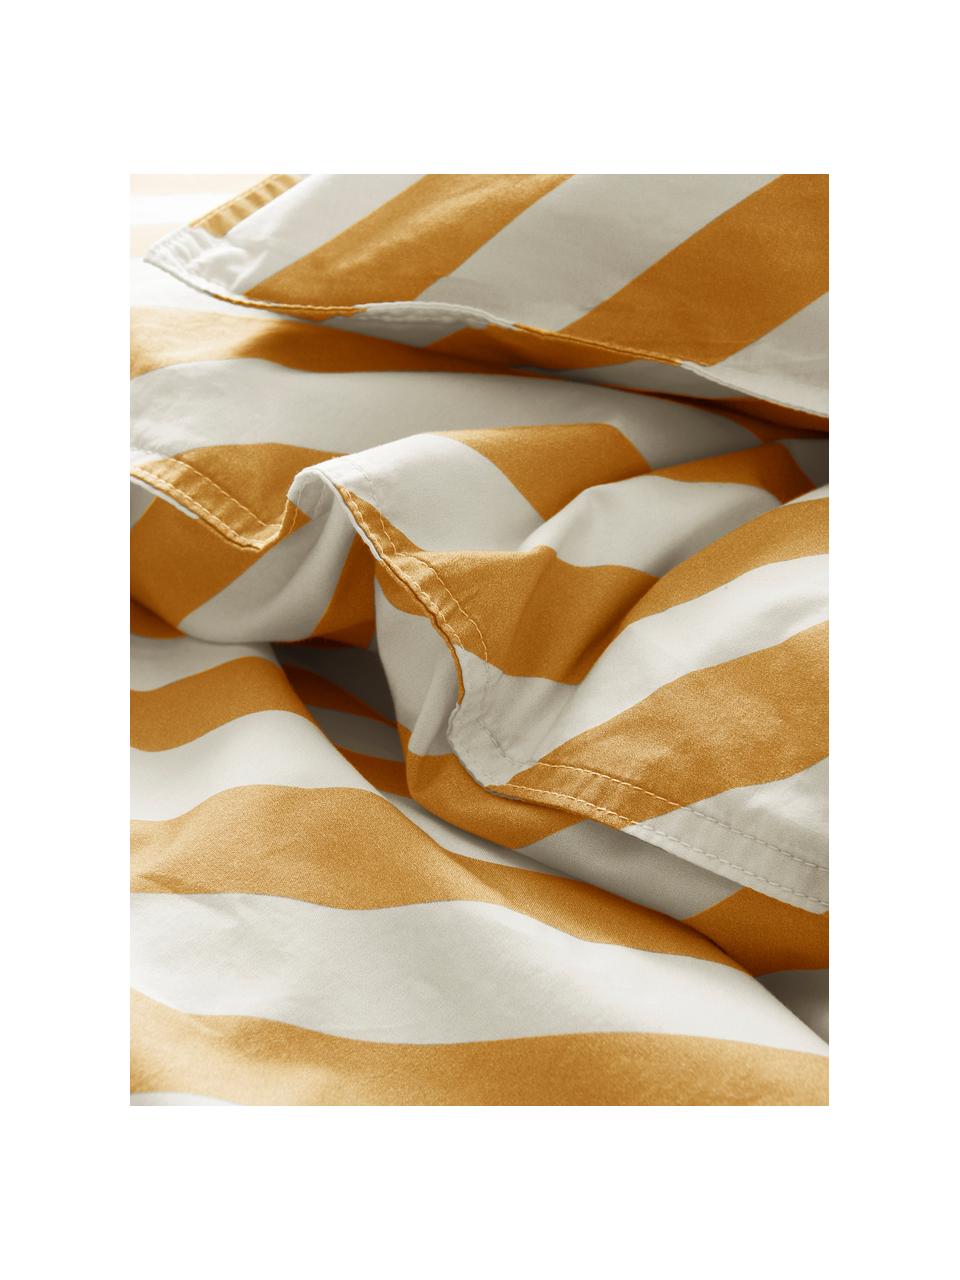 Katoenen dekbedovertrek Franny Mini met strepen in geel/wit, Weeftechniek: perkal, Geel, wit, 100 x 130 cm + 1 kussen 55 x 35 cm